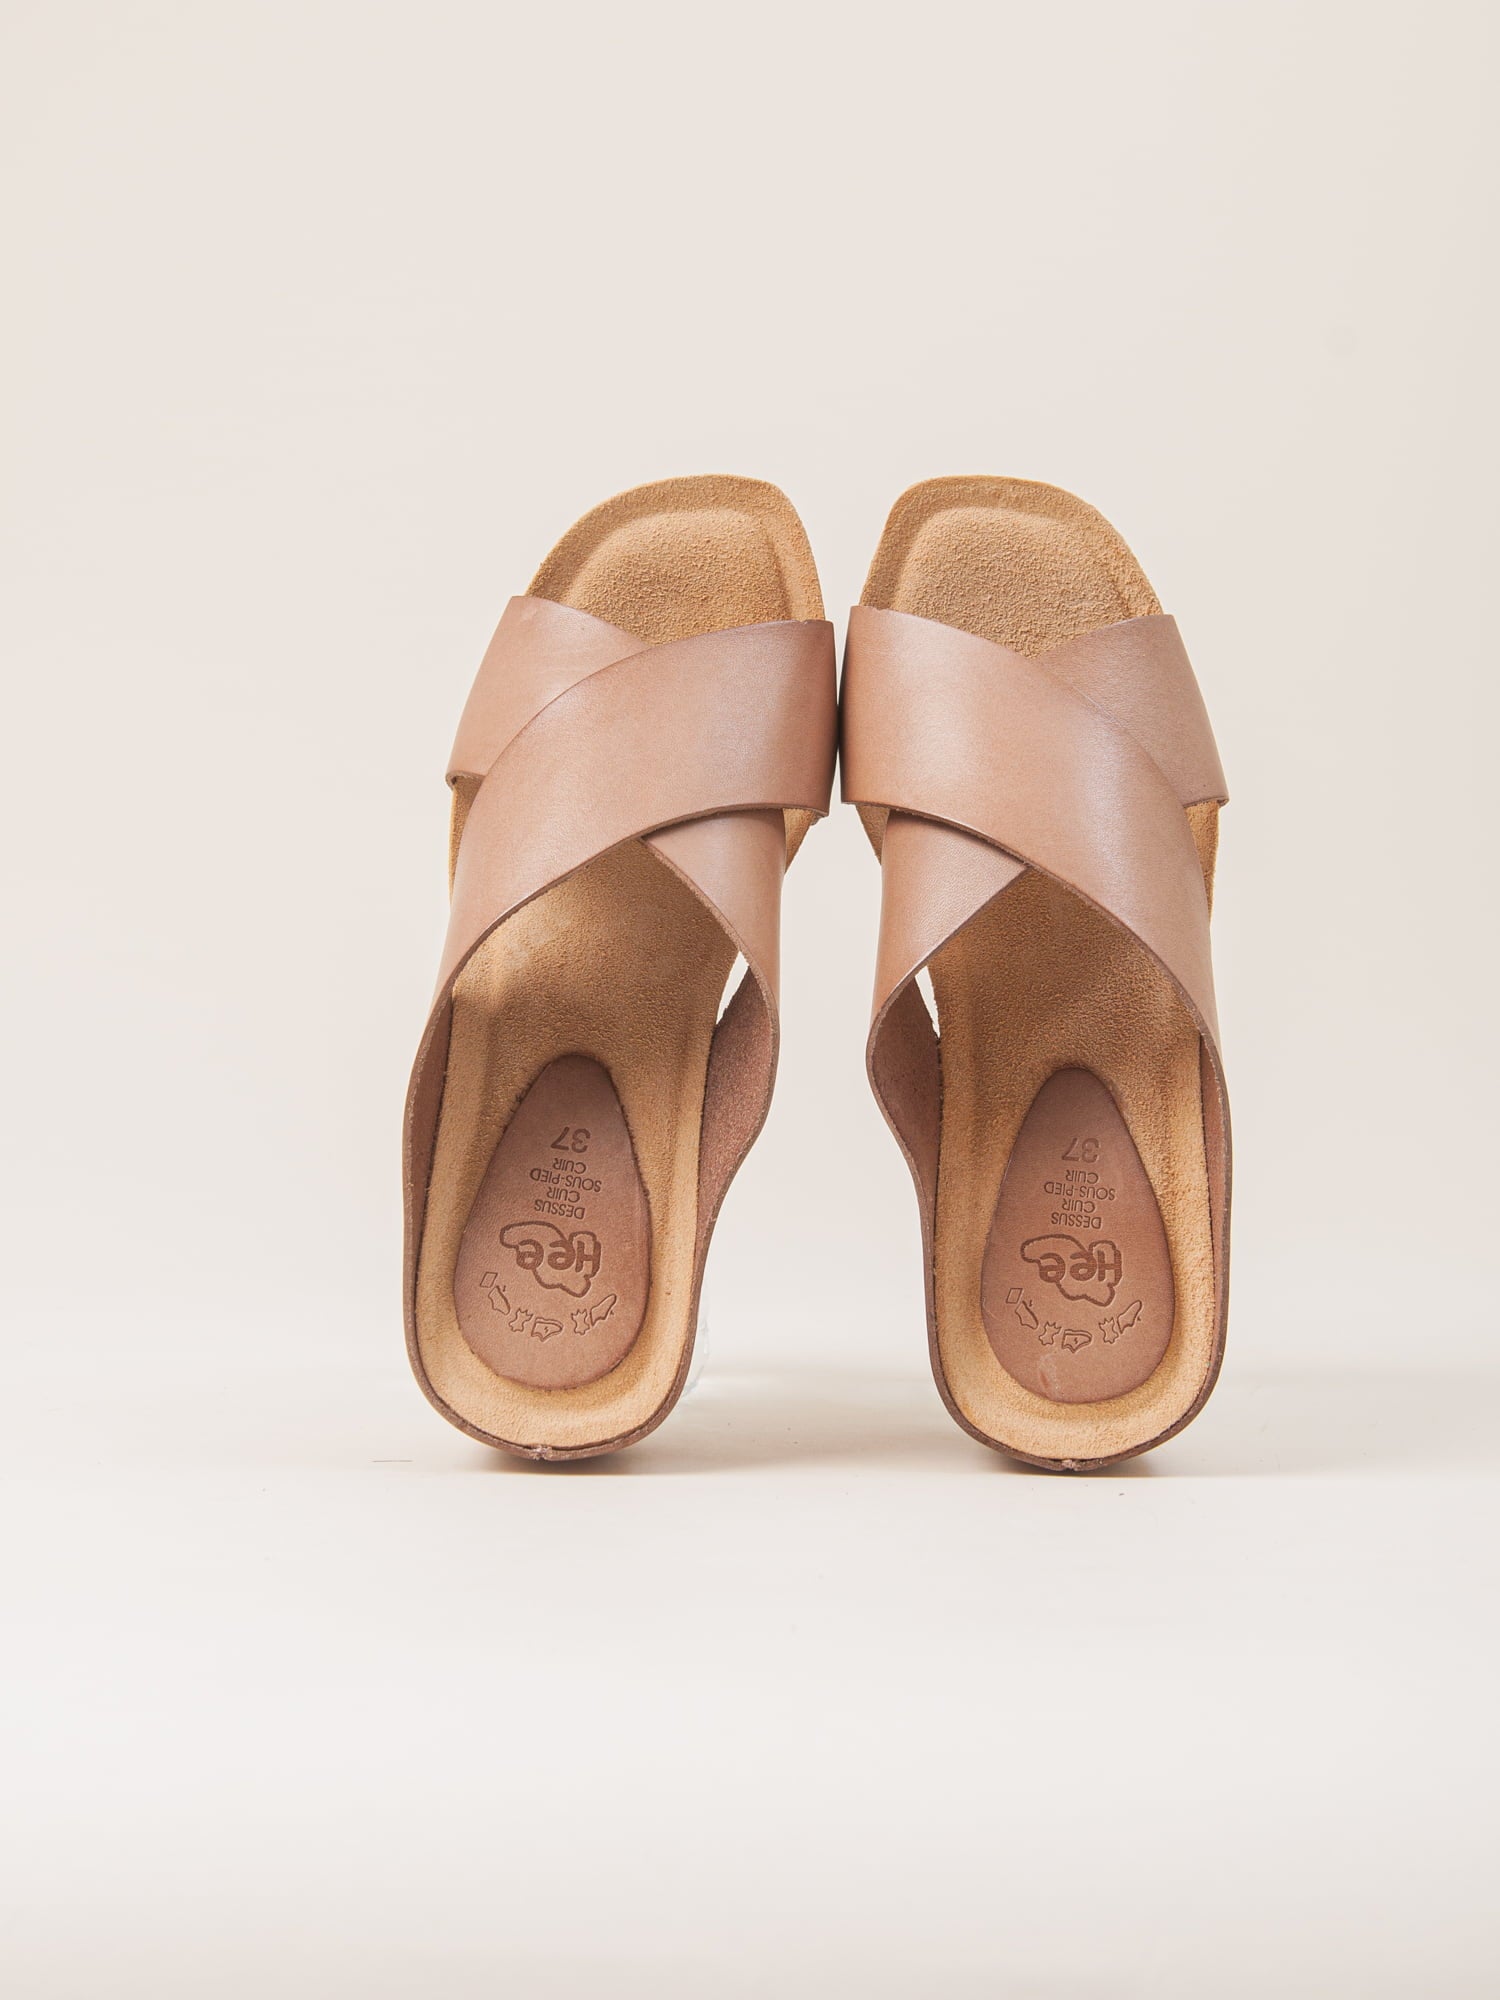 Sandalias de cuña. Sandalia de mujer con plataforma. Zapato de mujer ideal para el verano.